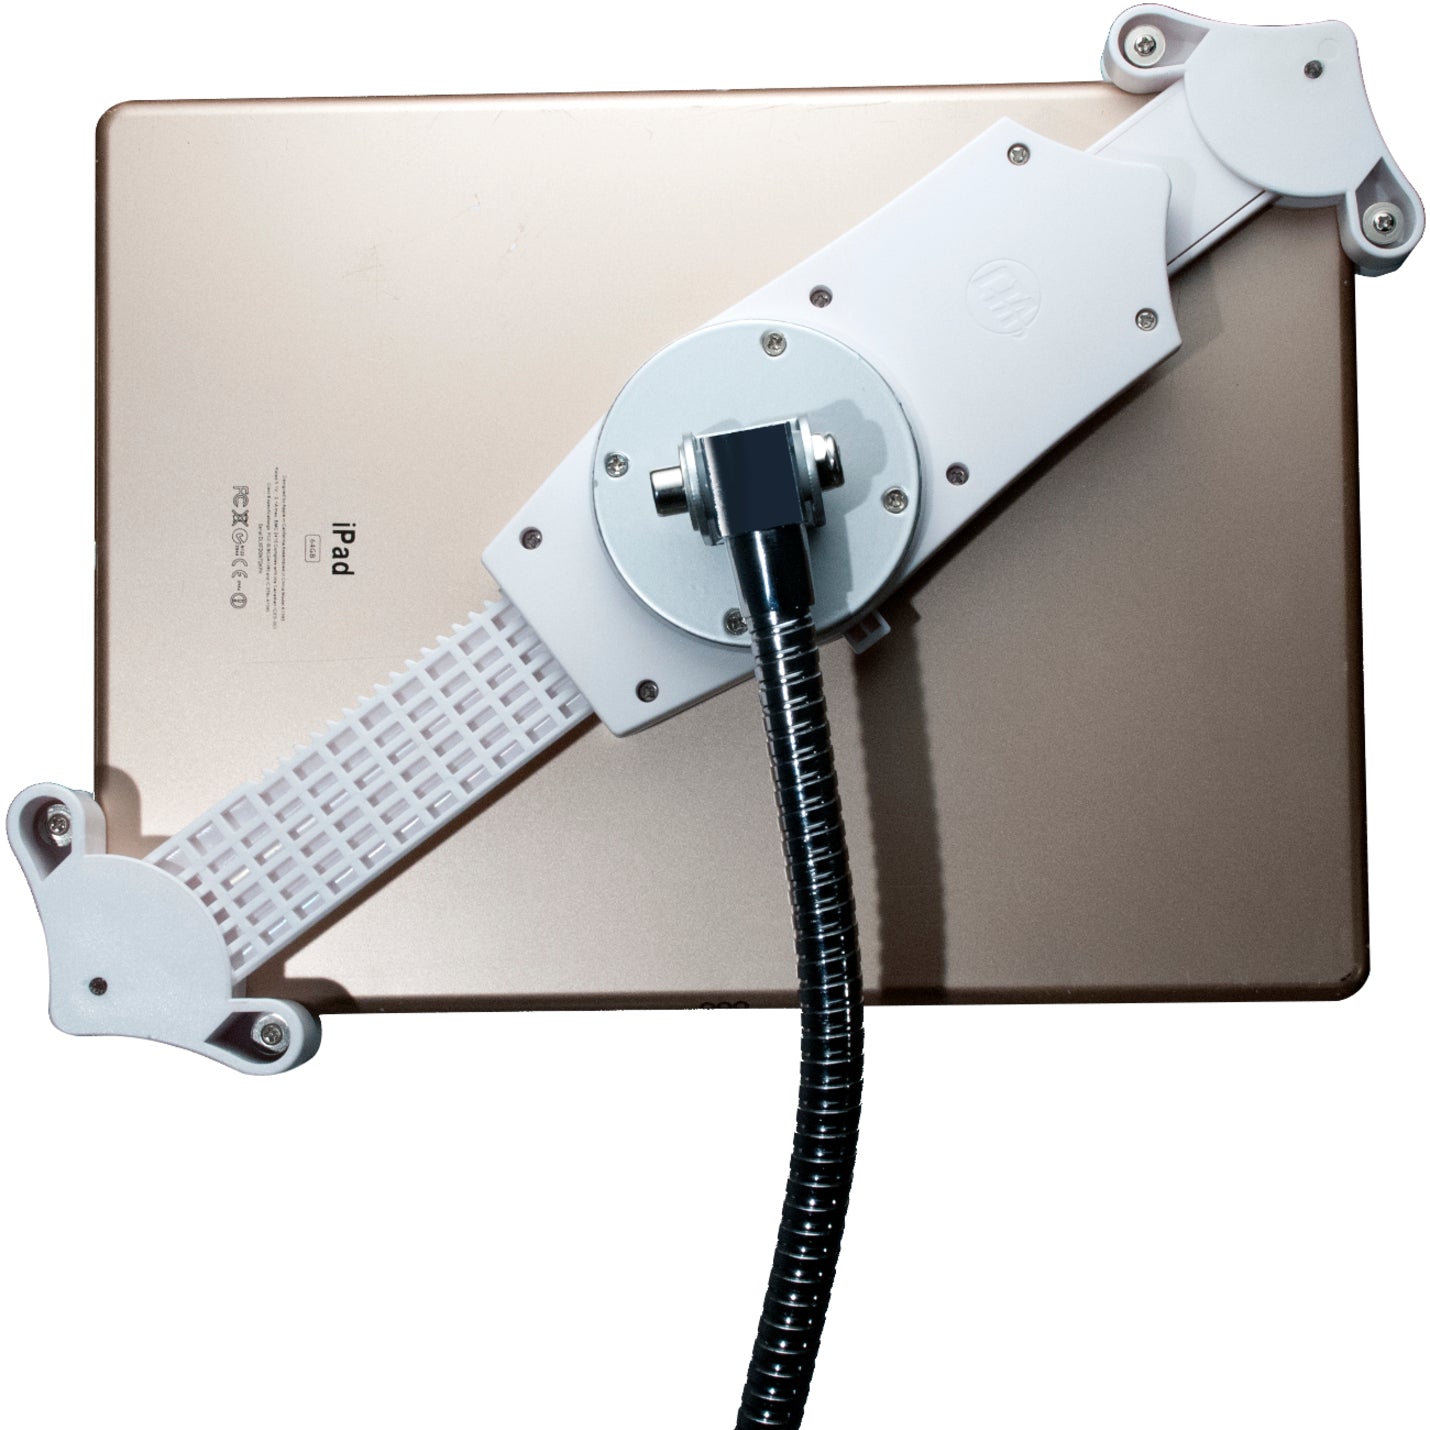 CTA Digital PAD-HFS Heavy-Duty Gooseneck Bodenständer für 7-13 Zoll Tablets